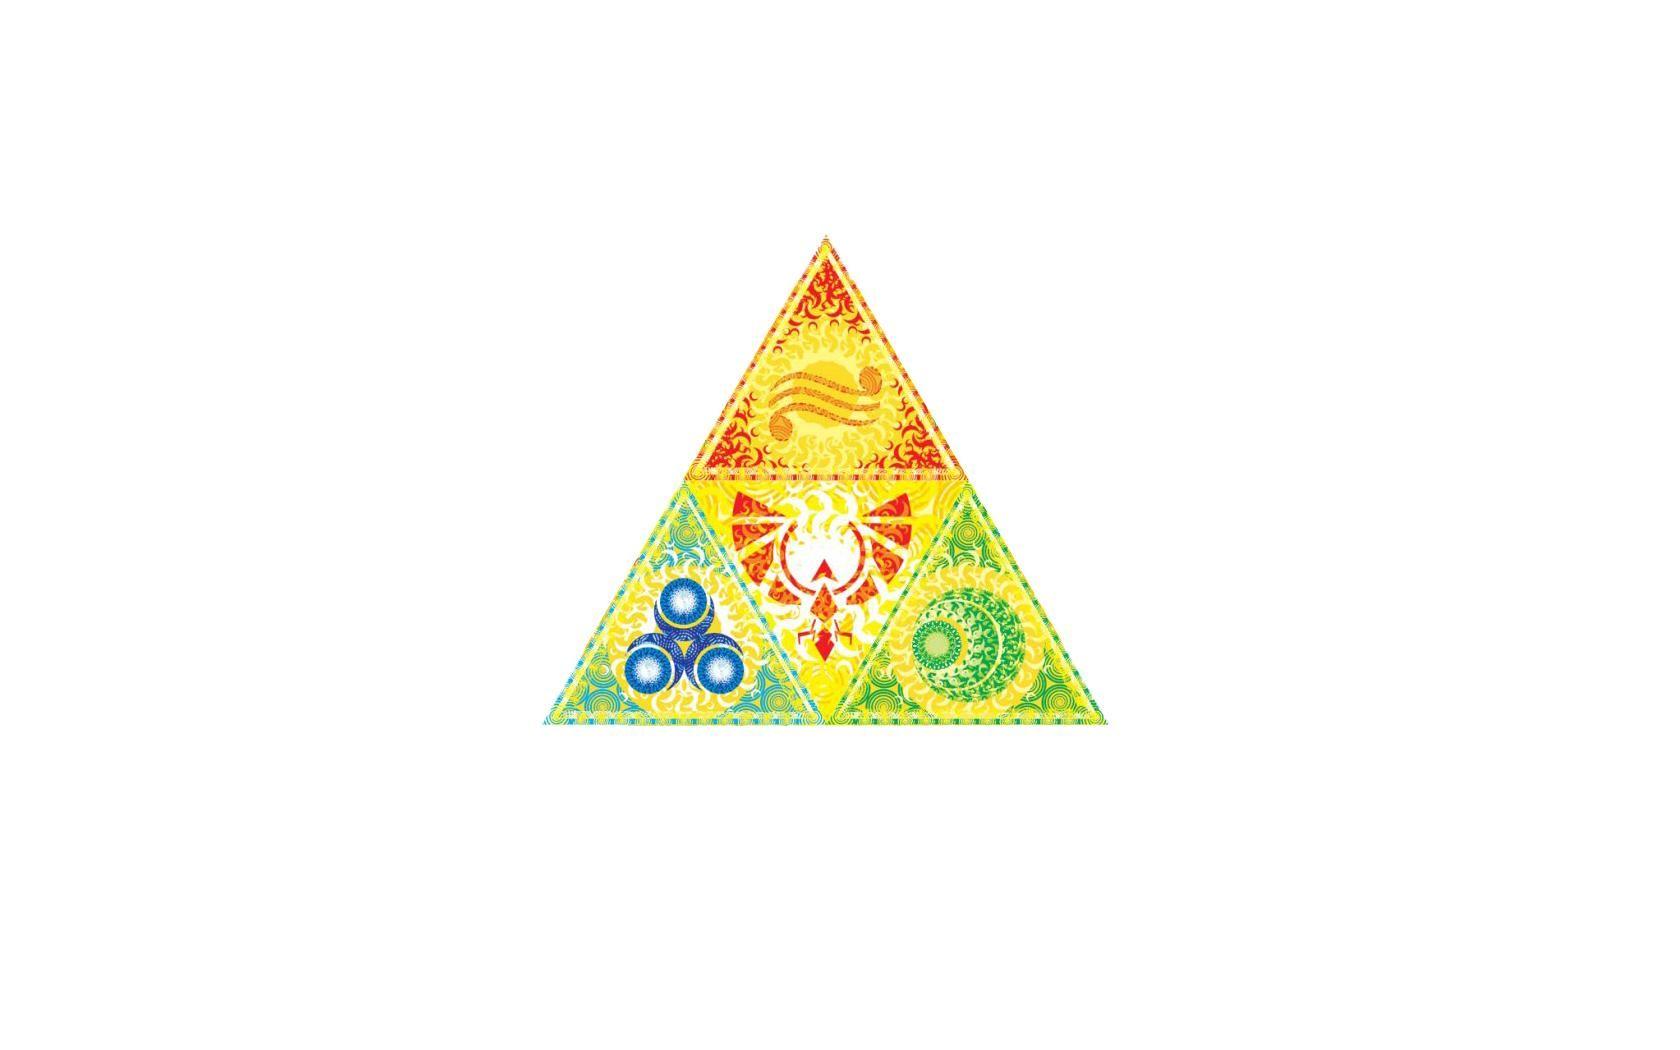 Zelda Triangle Logo - Zelda White Triangle Triforce | The Jester's Corner